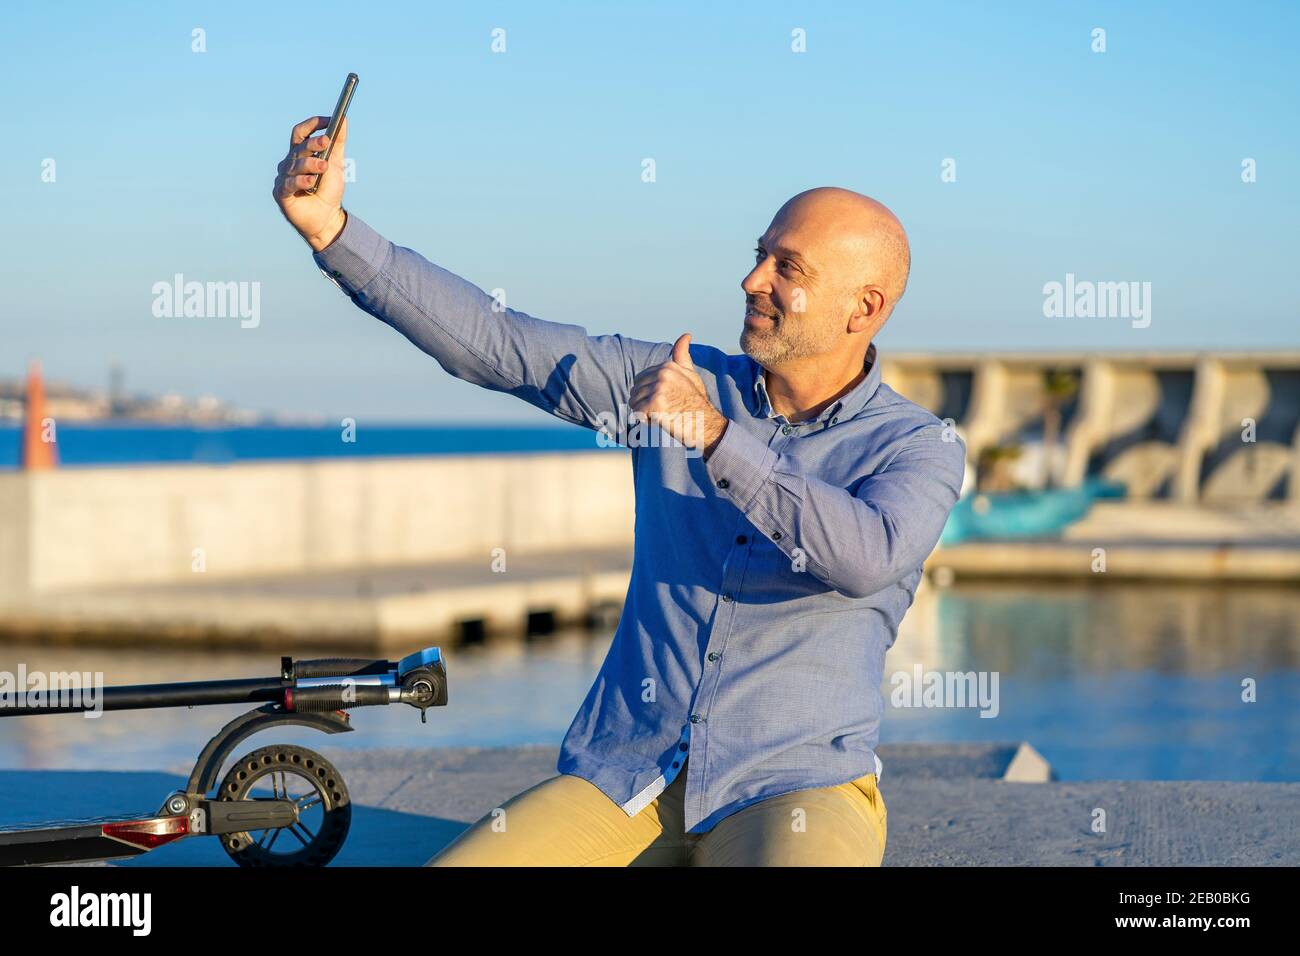 Reifer Mann nimmt Selfie mit Handy und macht Daumen nach oben Geste. Sie können das Meer im Hintergrund sehen. Abendlicht. Horizontales Foto. Stockfoto